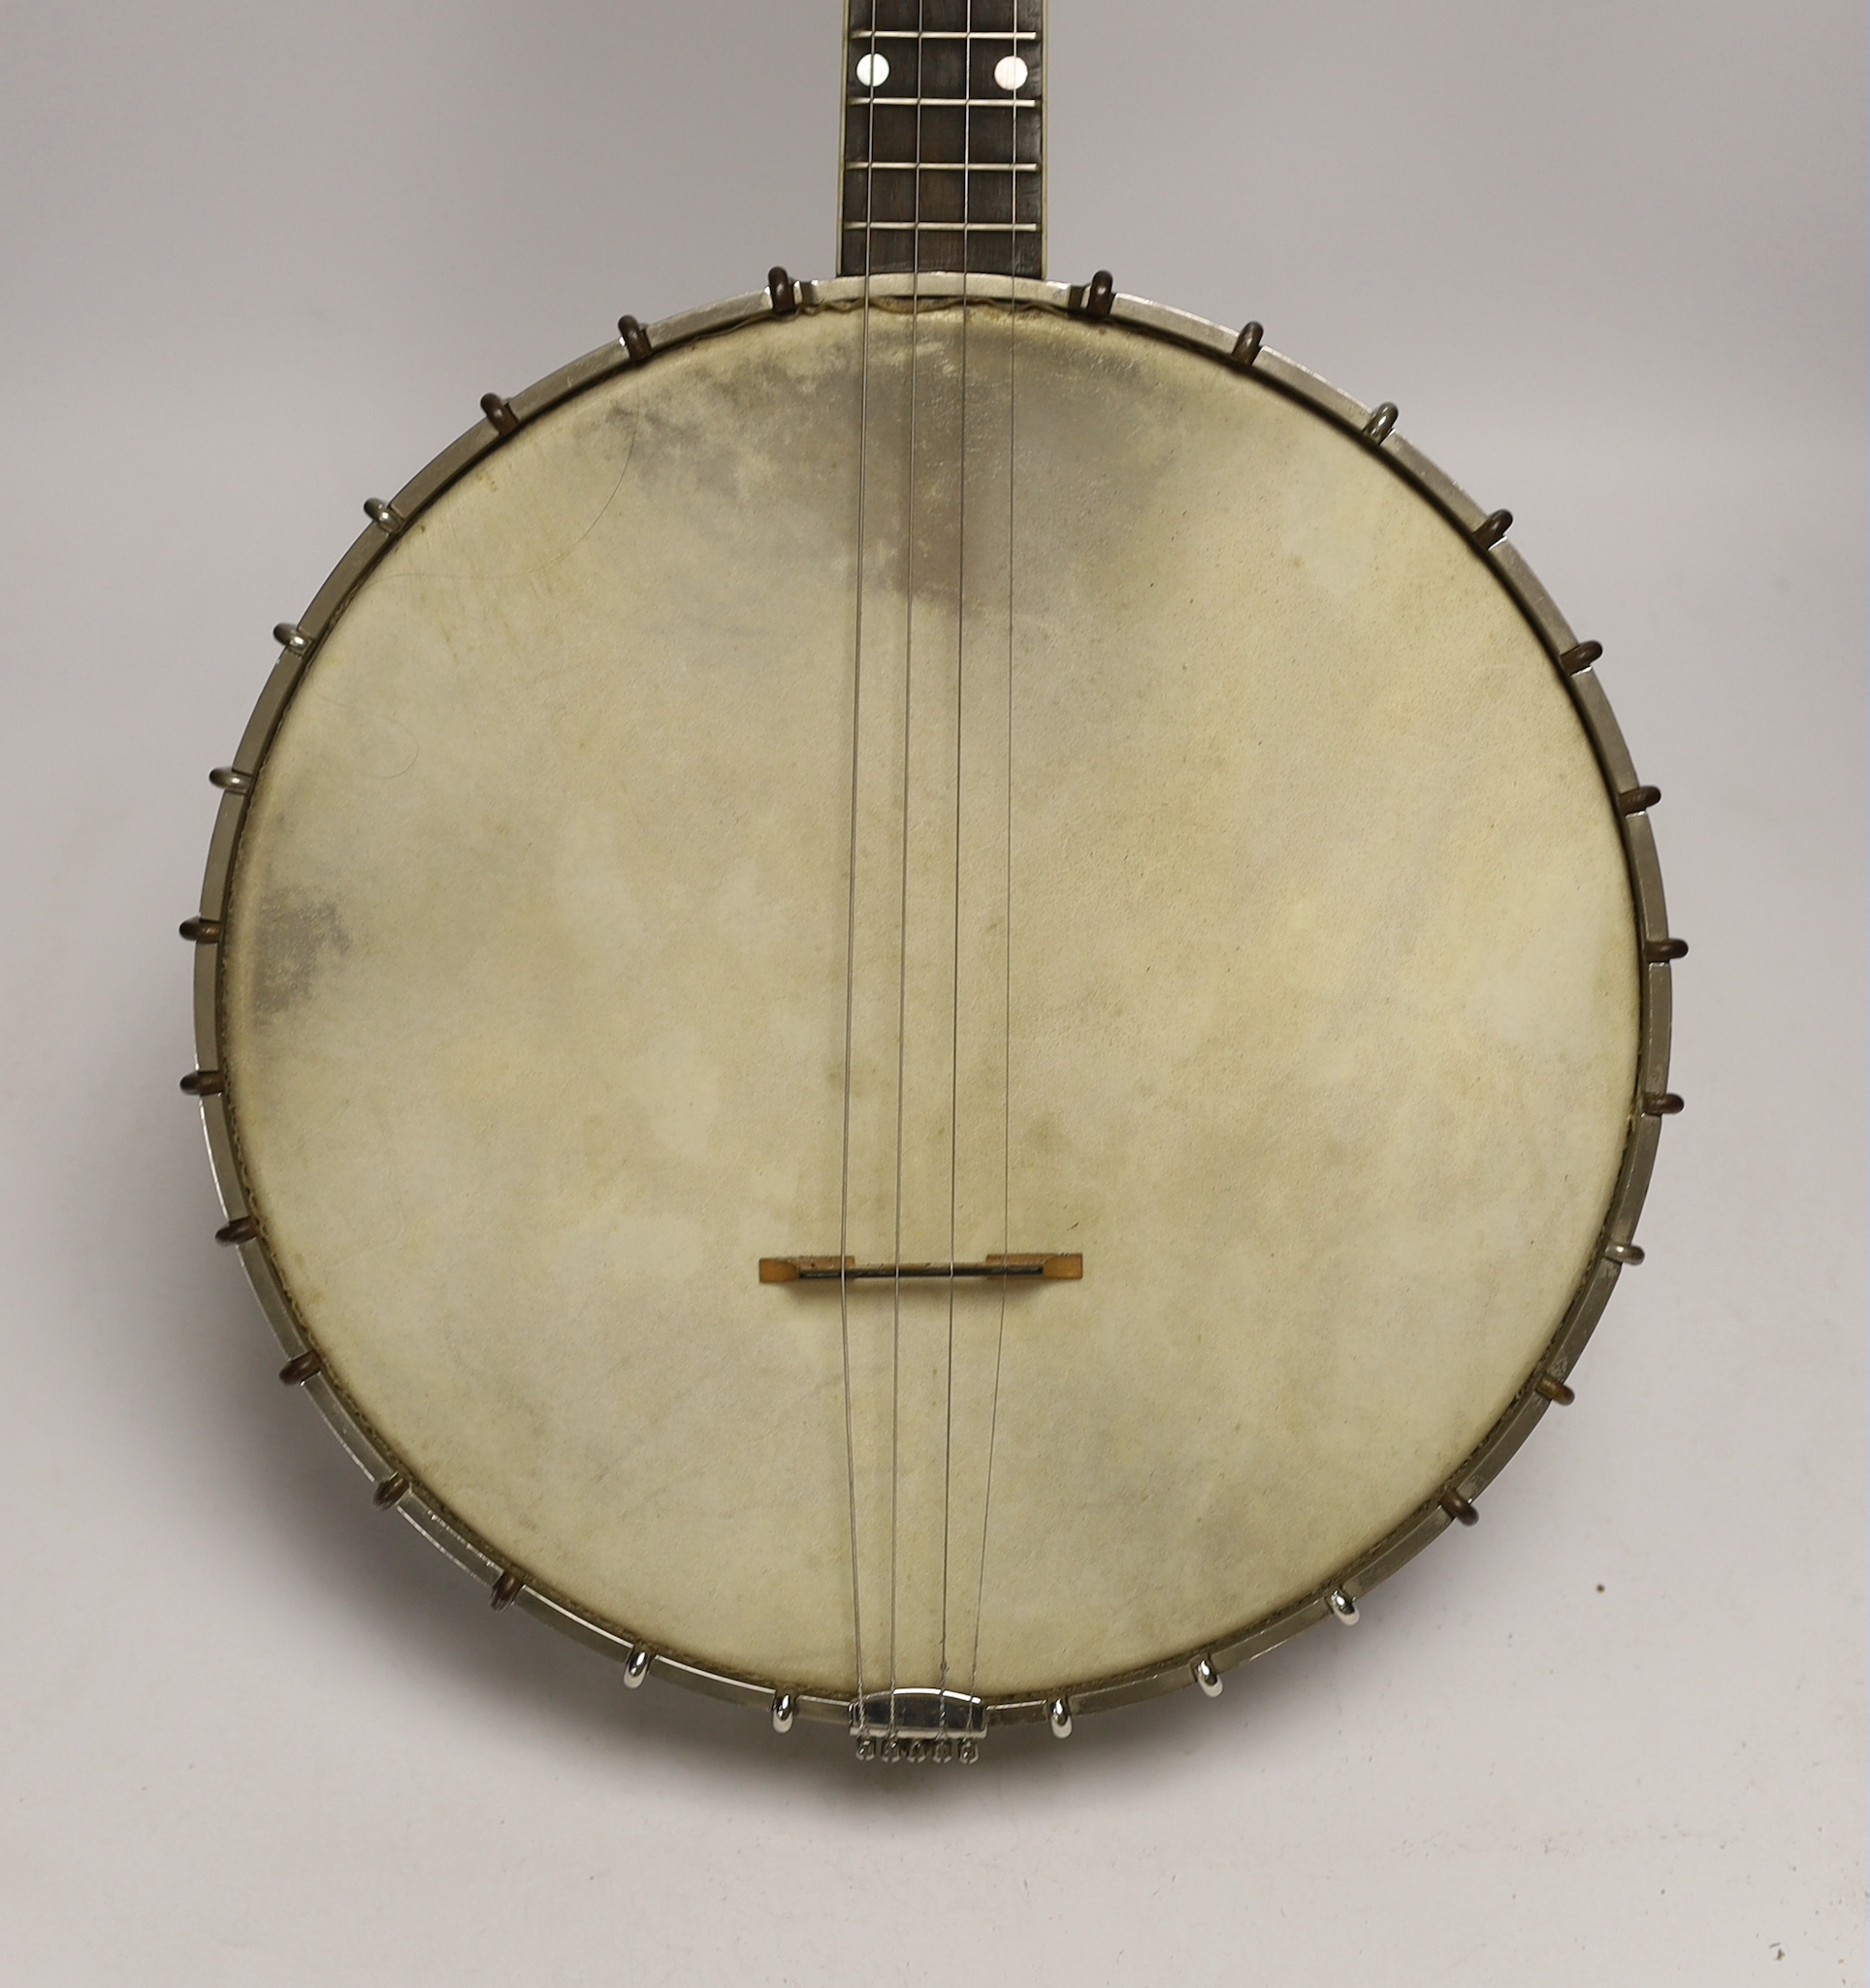 A Vega Tenor banjo, serial no.39214, overall length 84cm